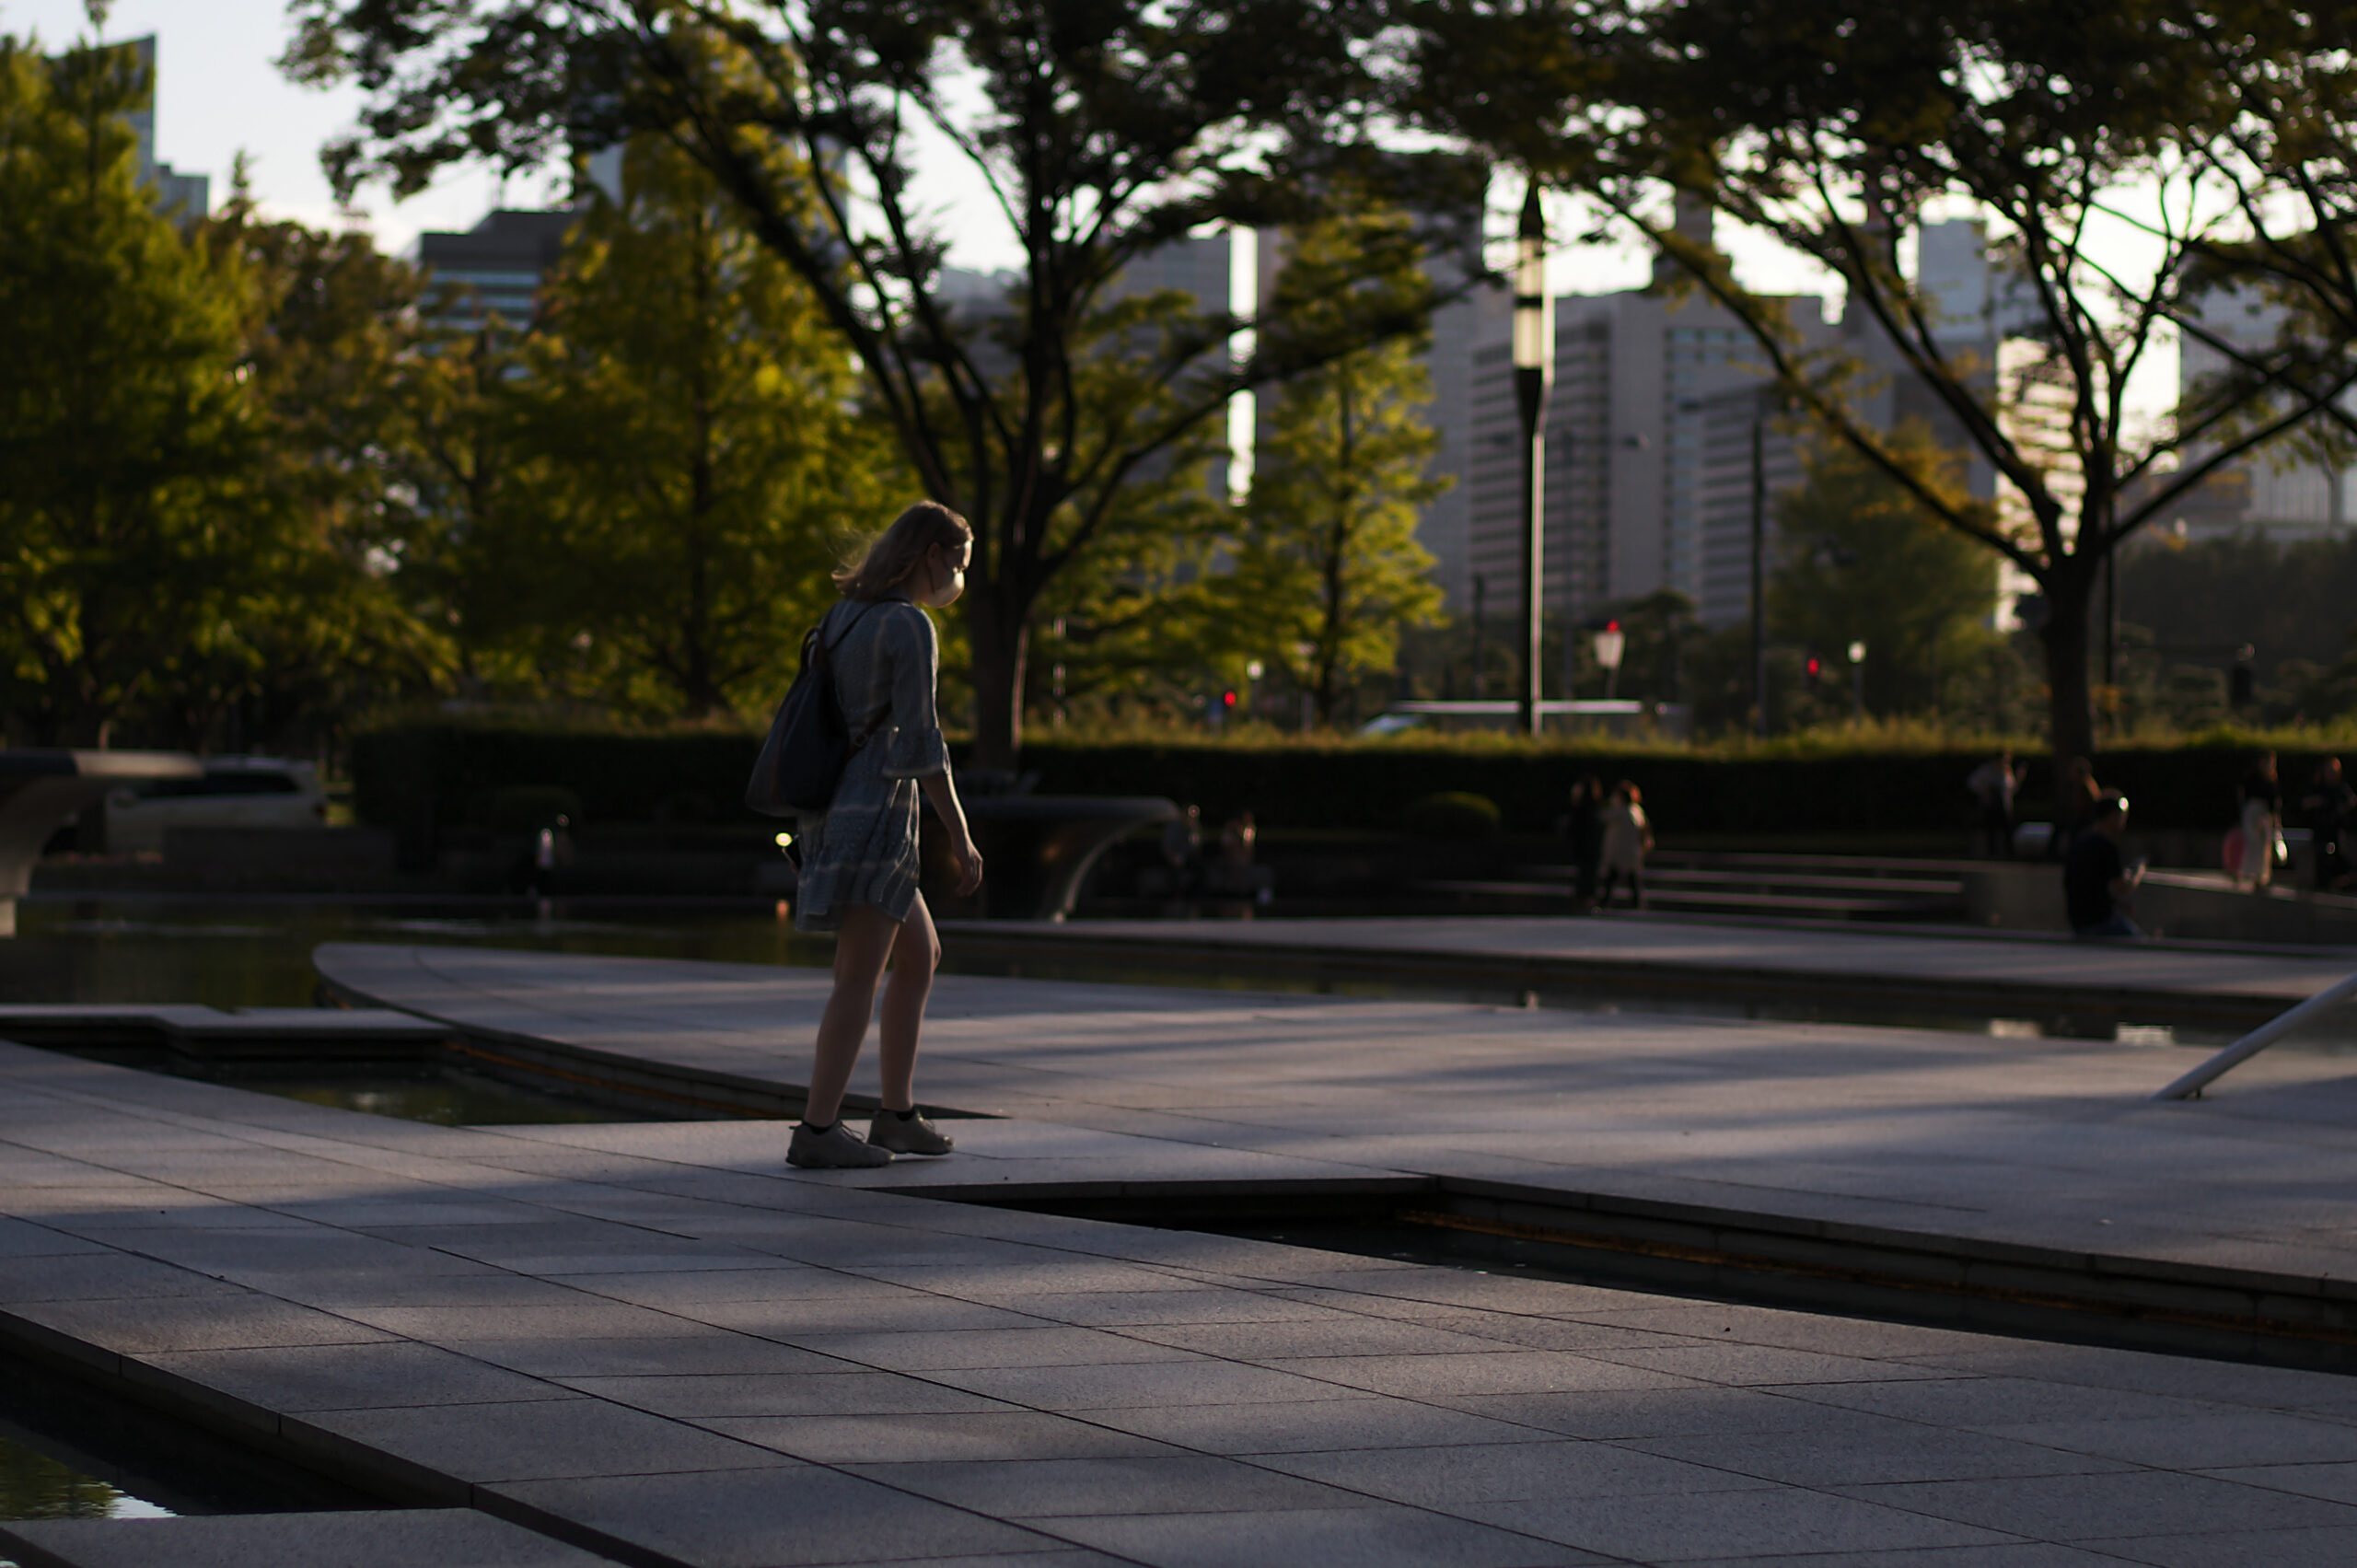 LSK PHOTO WALK DAY.１ / Wataru Nishida / Tomohiko Ishii / Drikin